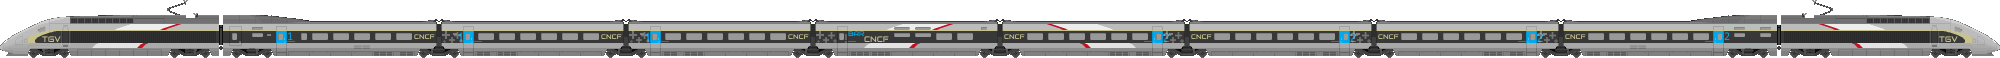 TGV POS CNCF